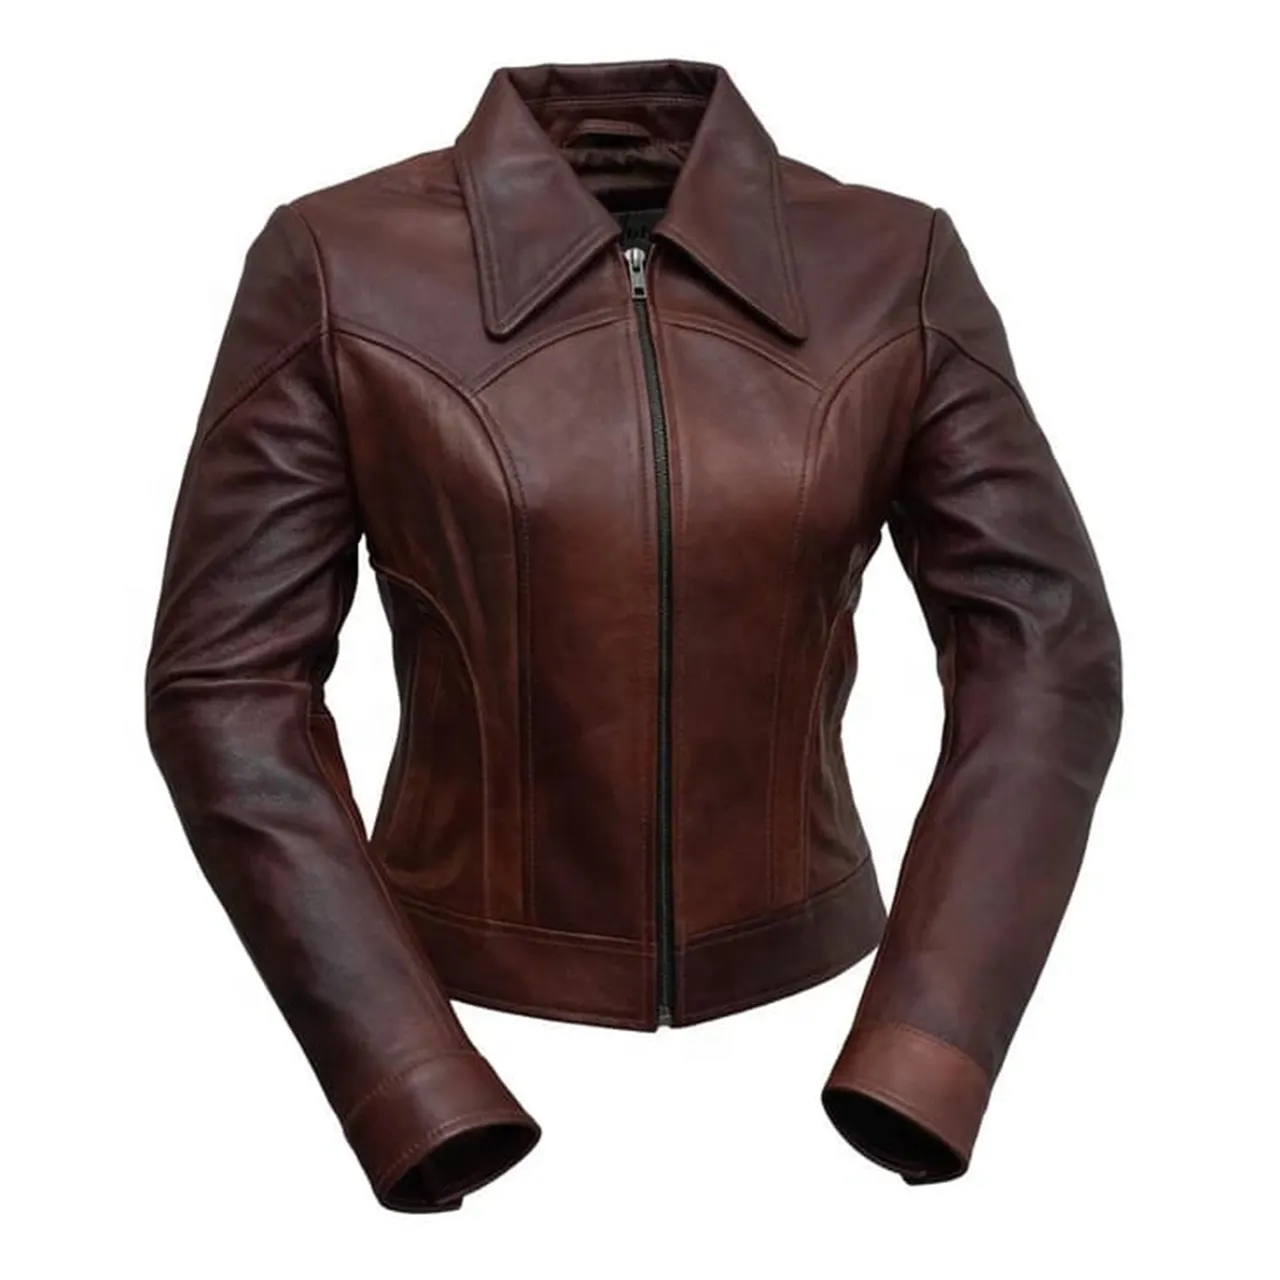 本革ジャケット女性2021新しいファッション長袖秋の革ジャケット女性の冬のバイカージャケット